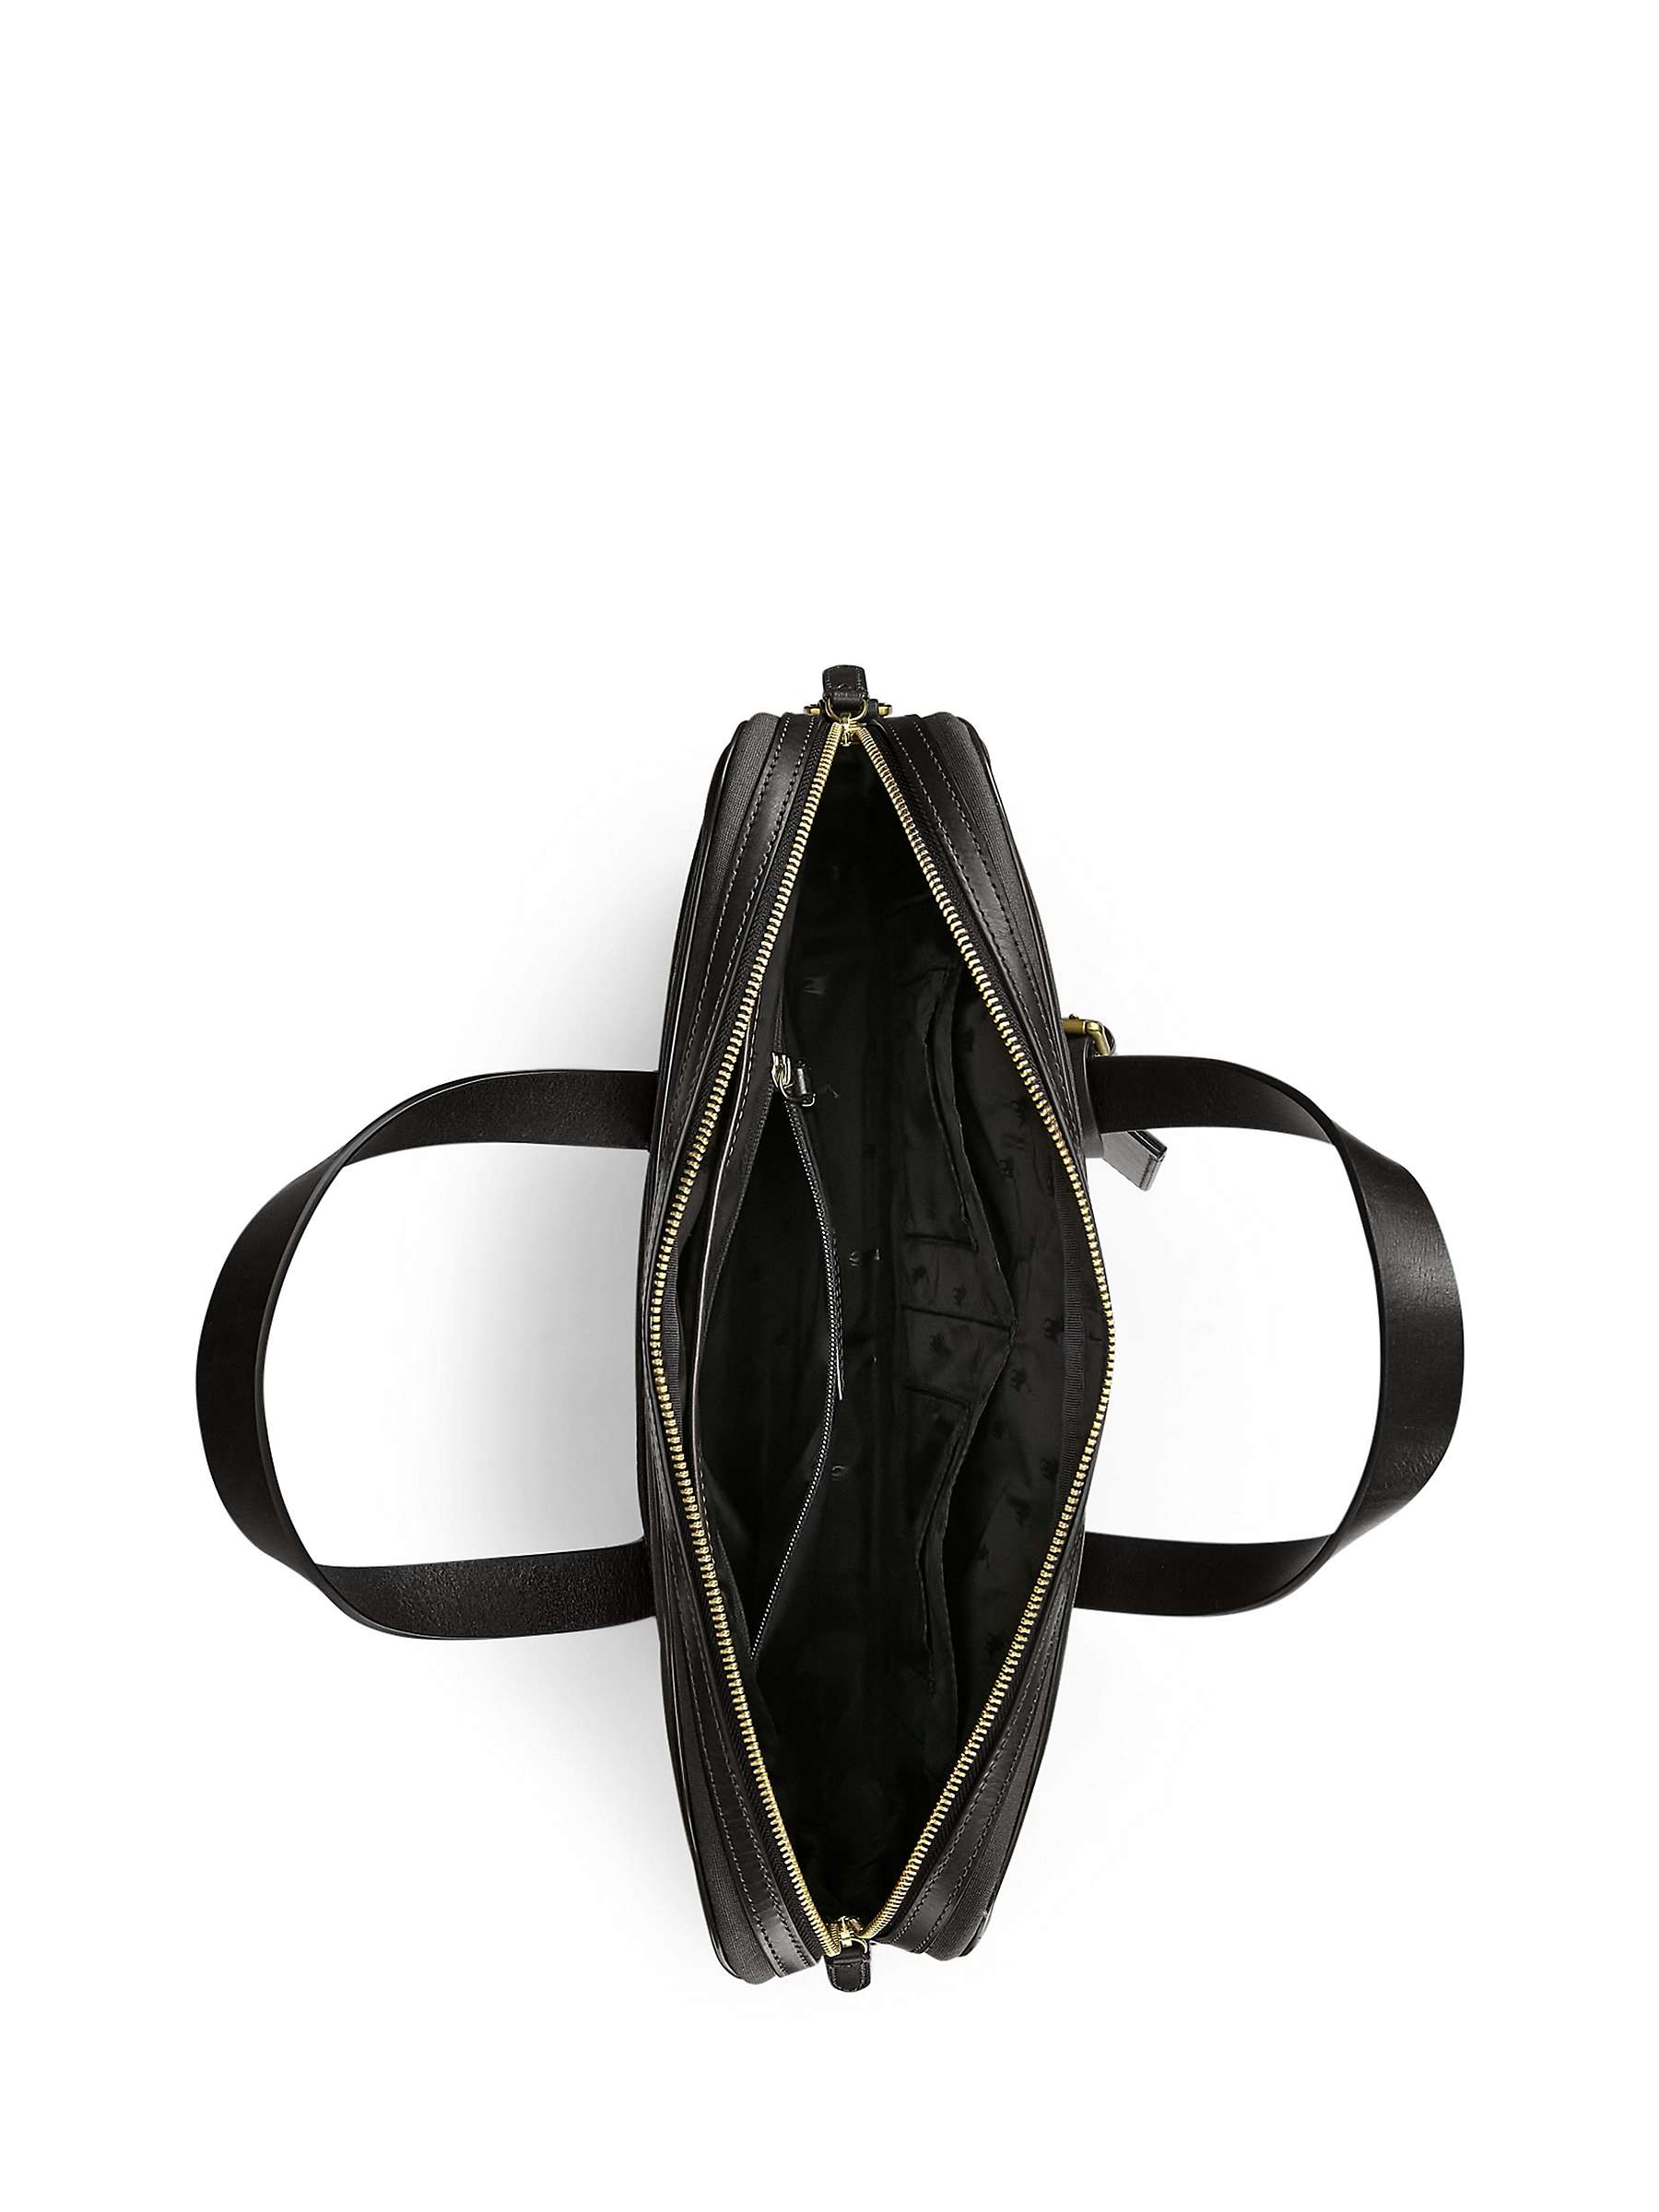 Buy Ralph Lauren Versatile Business Bag, Black Online at johnlewis.com